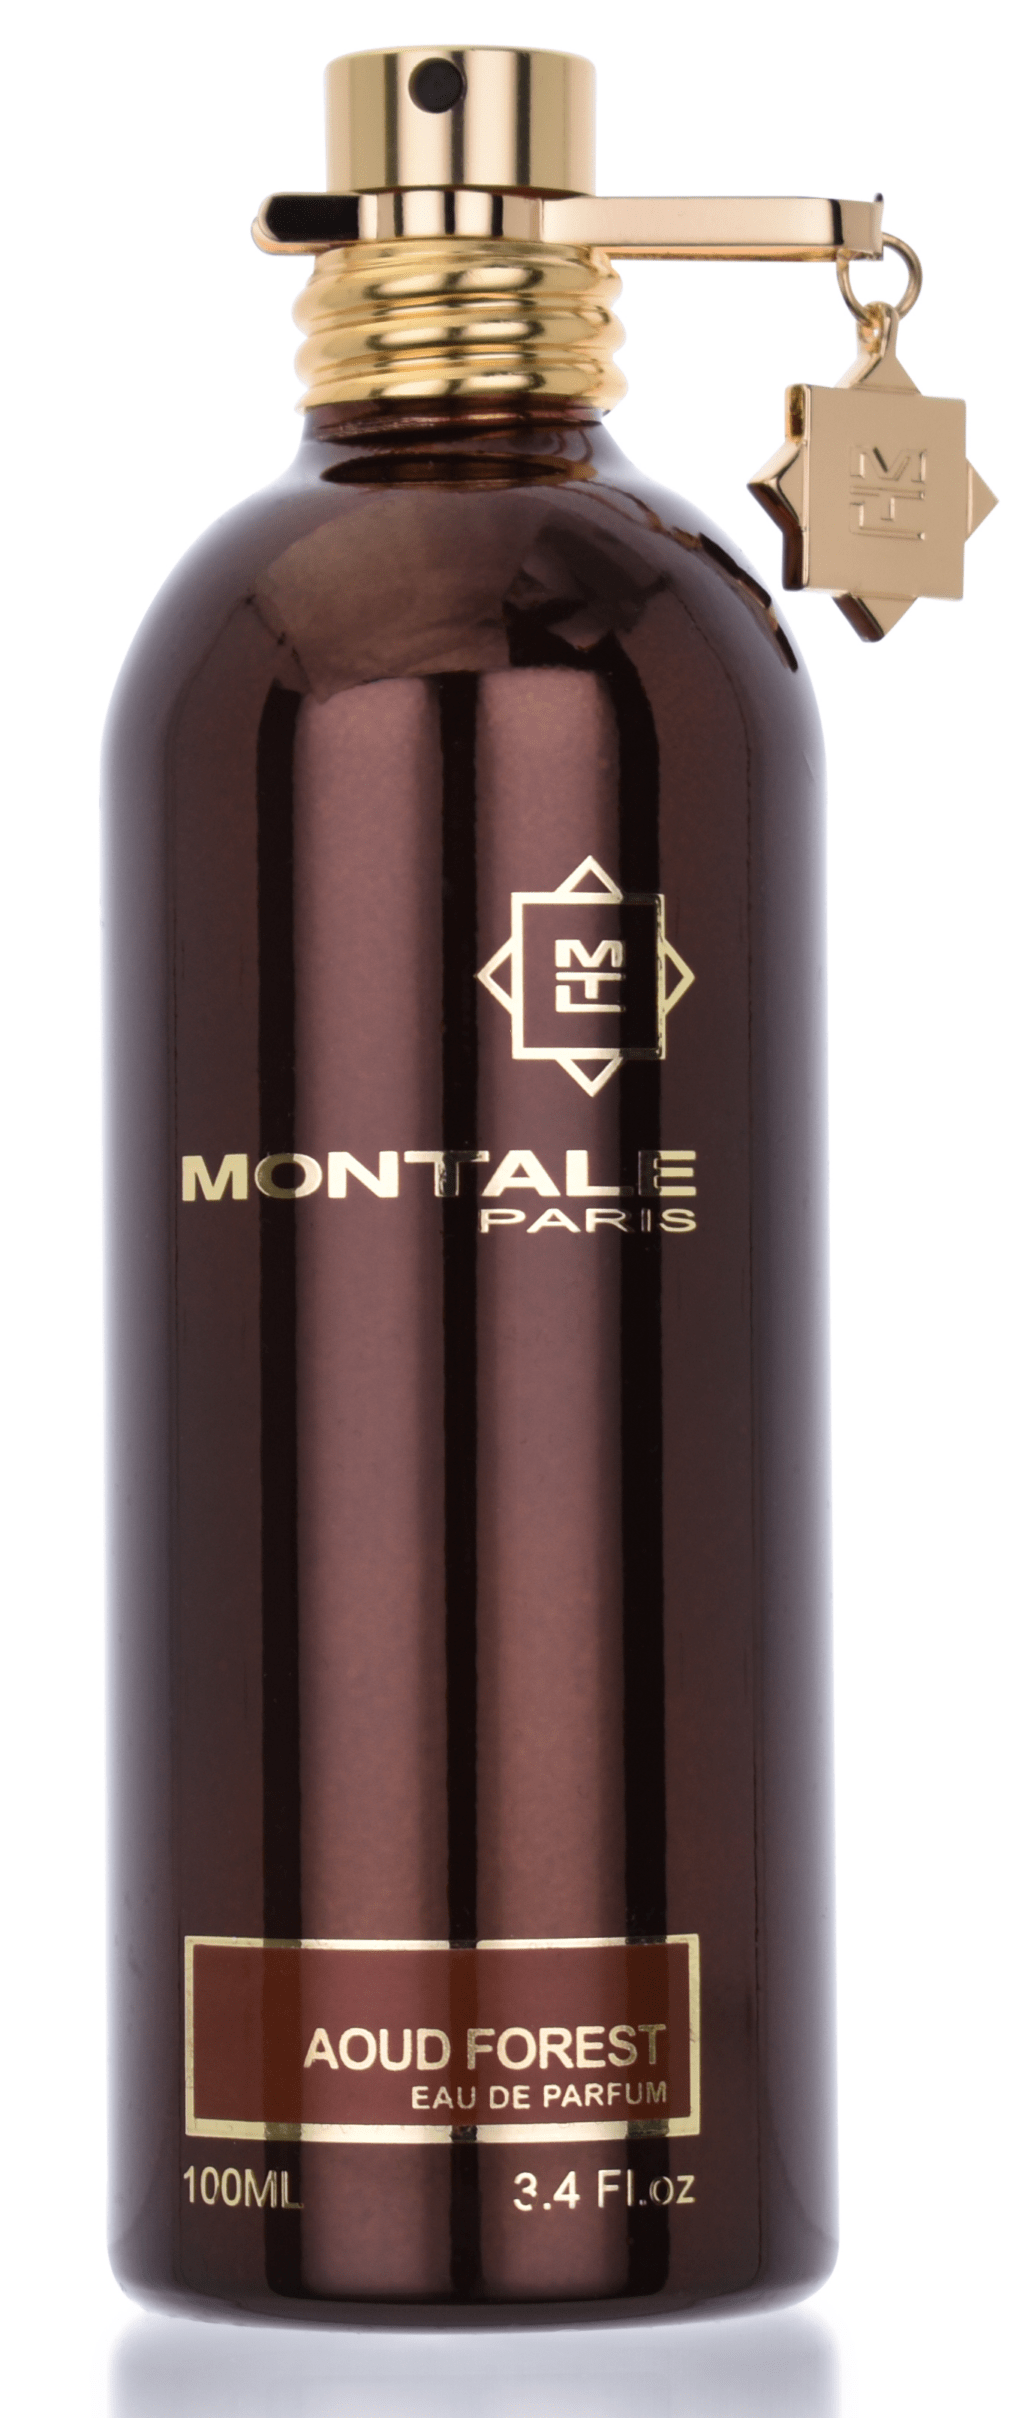 Montale Paris Aoud Forest 5 ml Eau de Parfum Abfüllung  